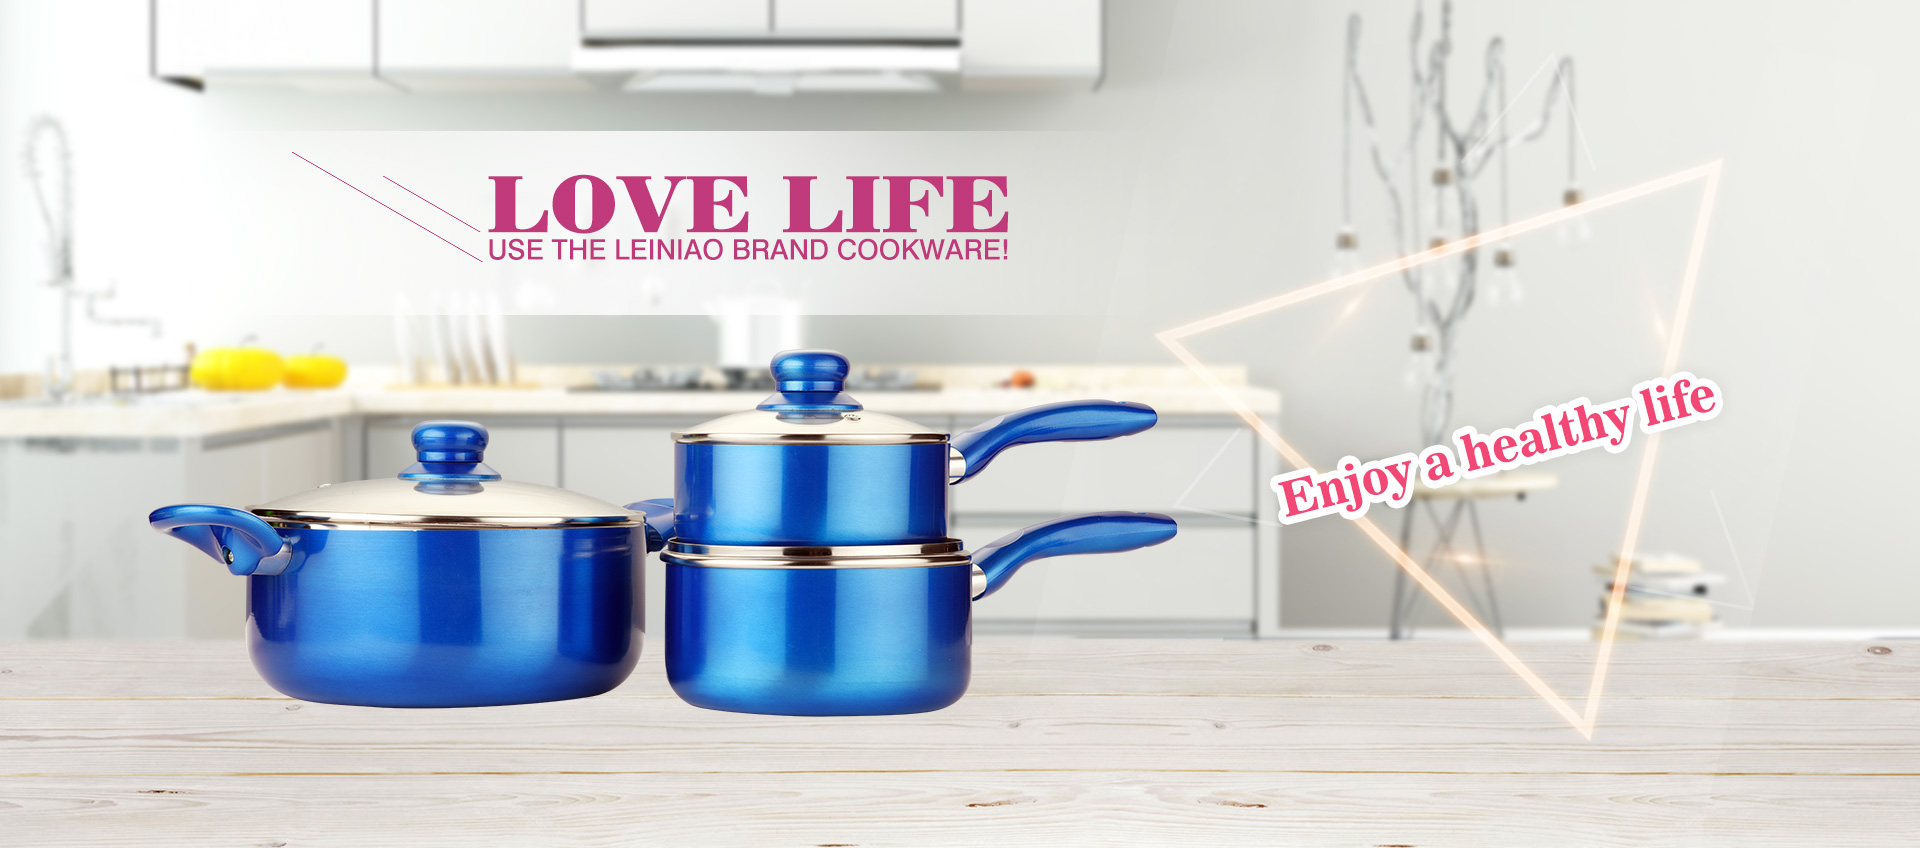 Enjoy a healthy life,use the leiniao brand cookware!-02